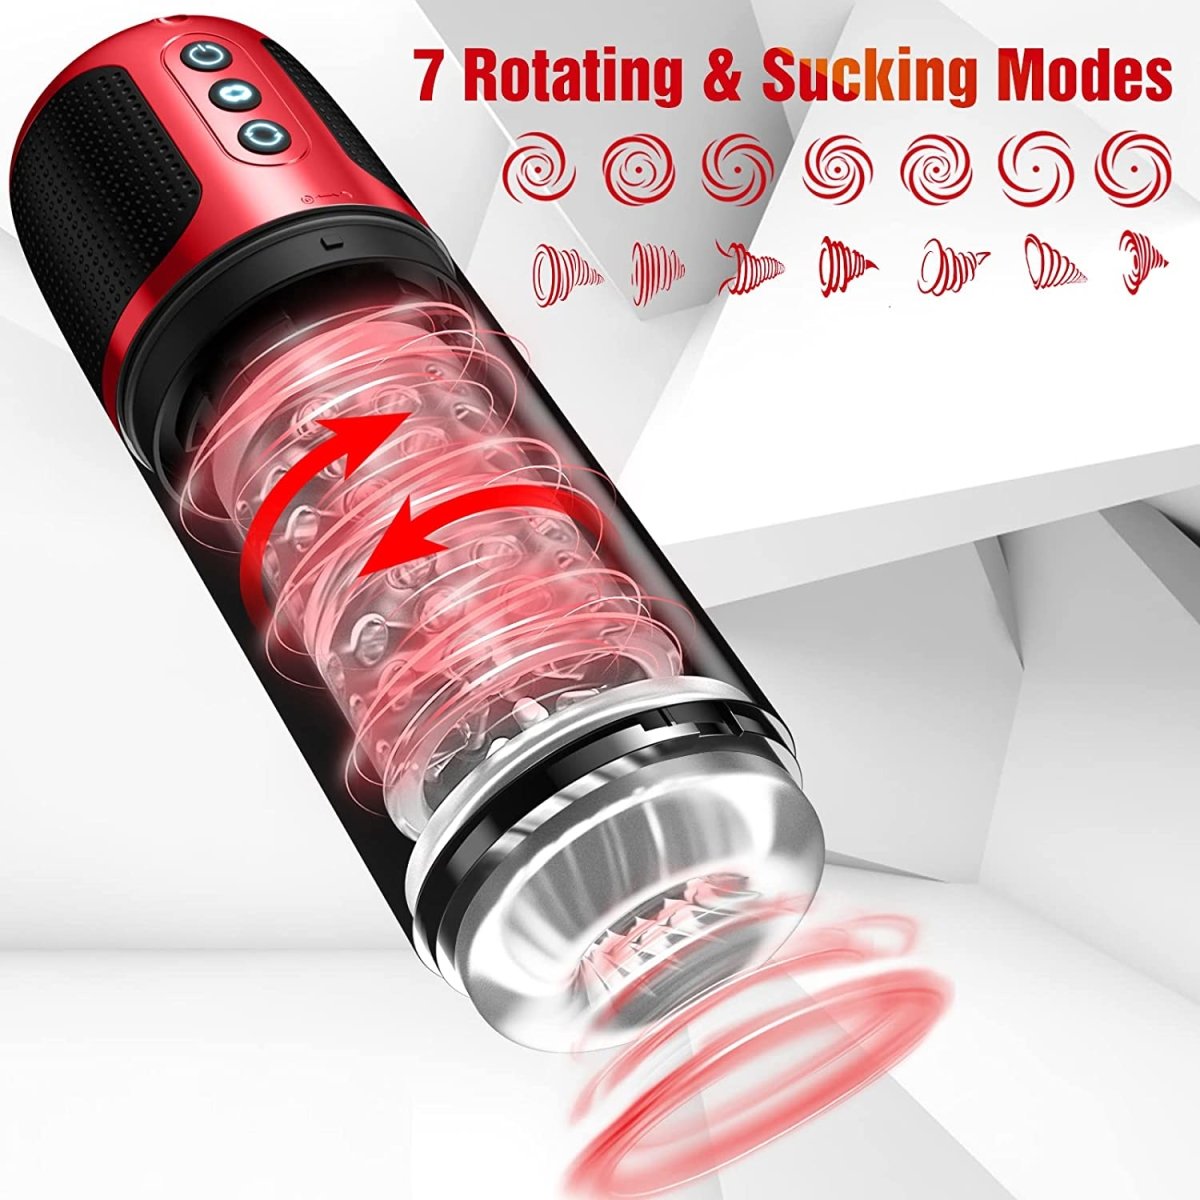 Oleifun Auto Male Masturbator Men Self Sucking & Rotating Toy 7 Modes Waterproof - oleifun -